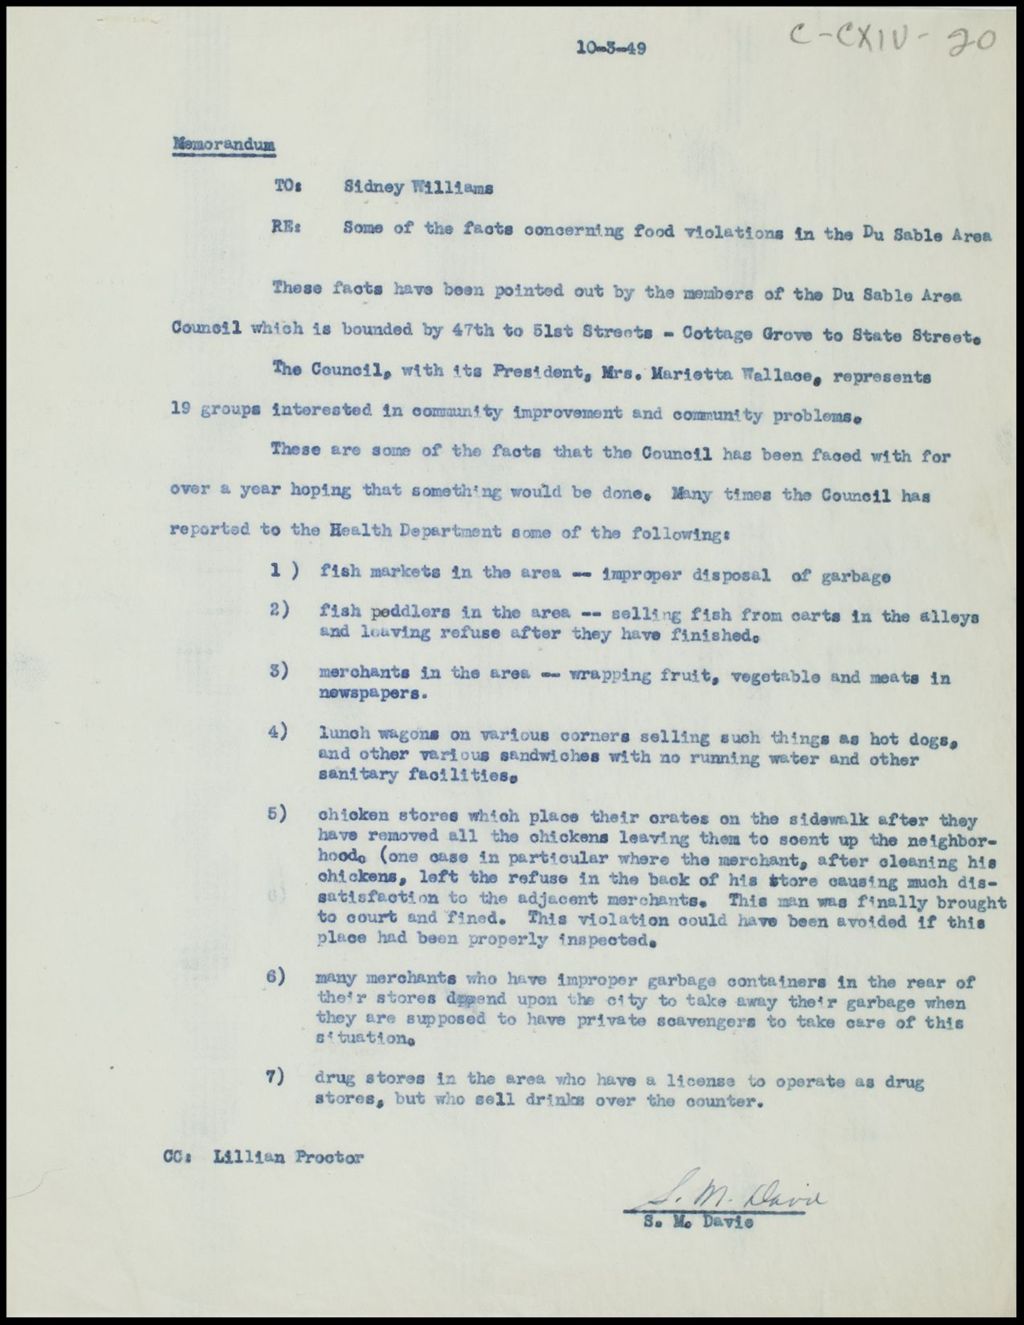 Memoranda, 1949-1950 (Folder II-2181)